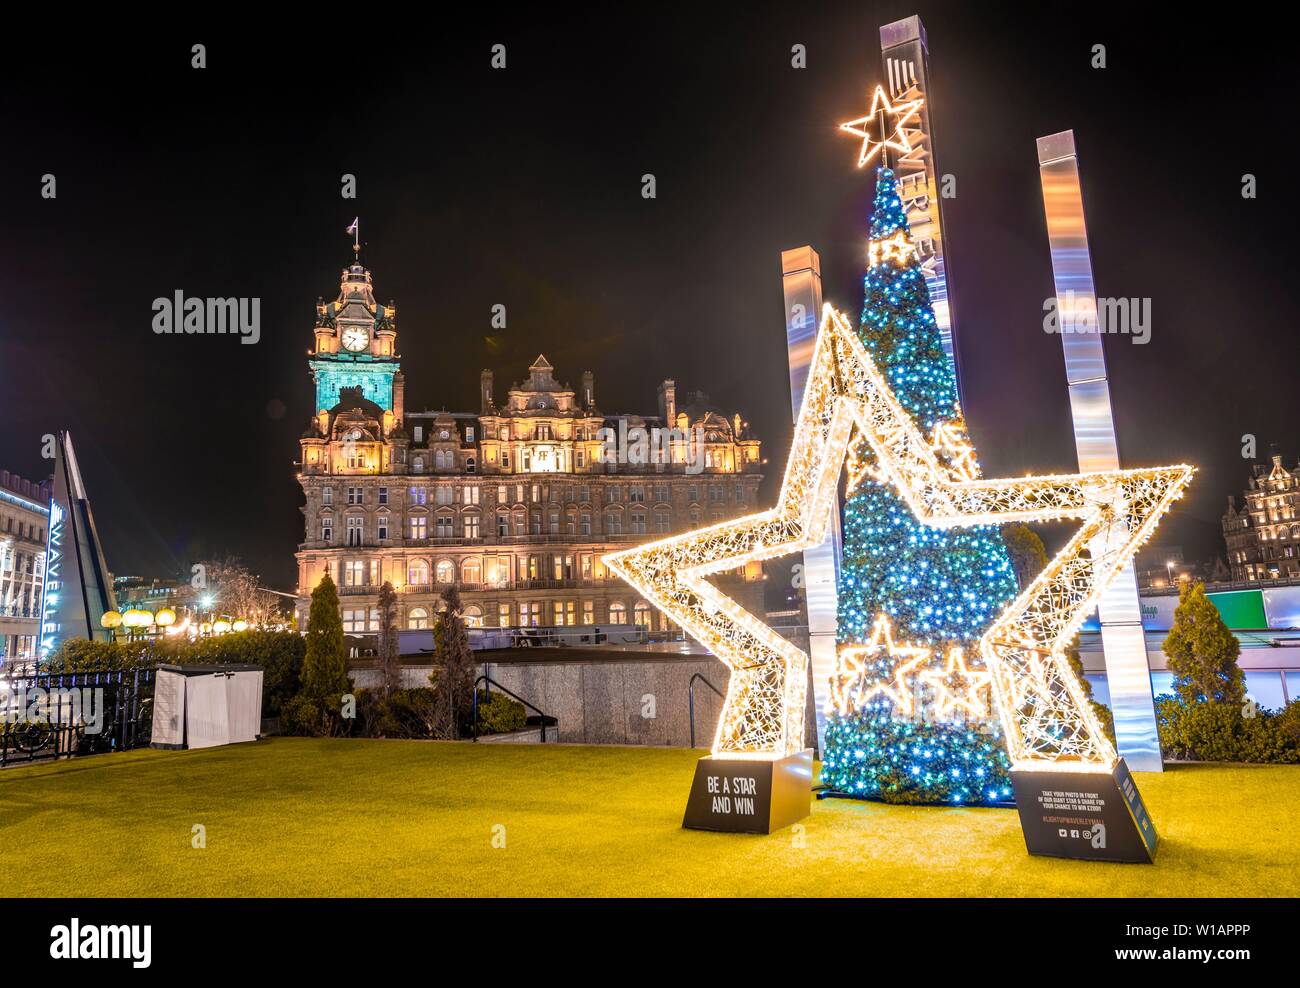 Eine europäische Starling und Gewinnen, Weihnachten Dekoration vor der Balmoral Hotel, historische Altstadt bei Nacht, Edinburgh, Schottland, Vereinigtes Königreich Stockfoto